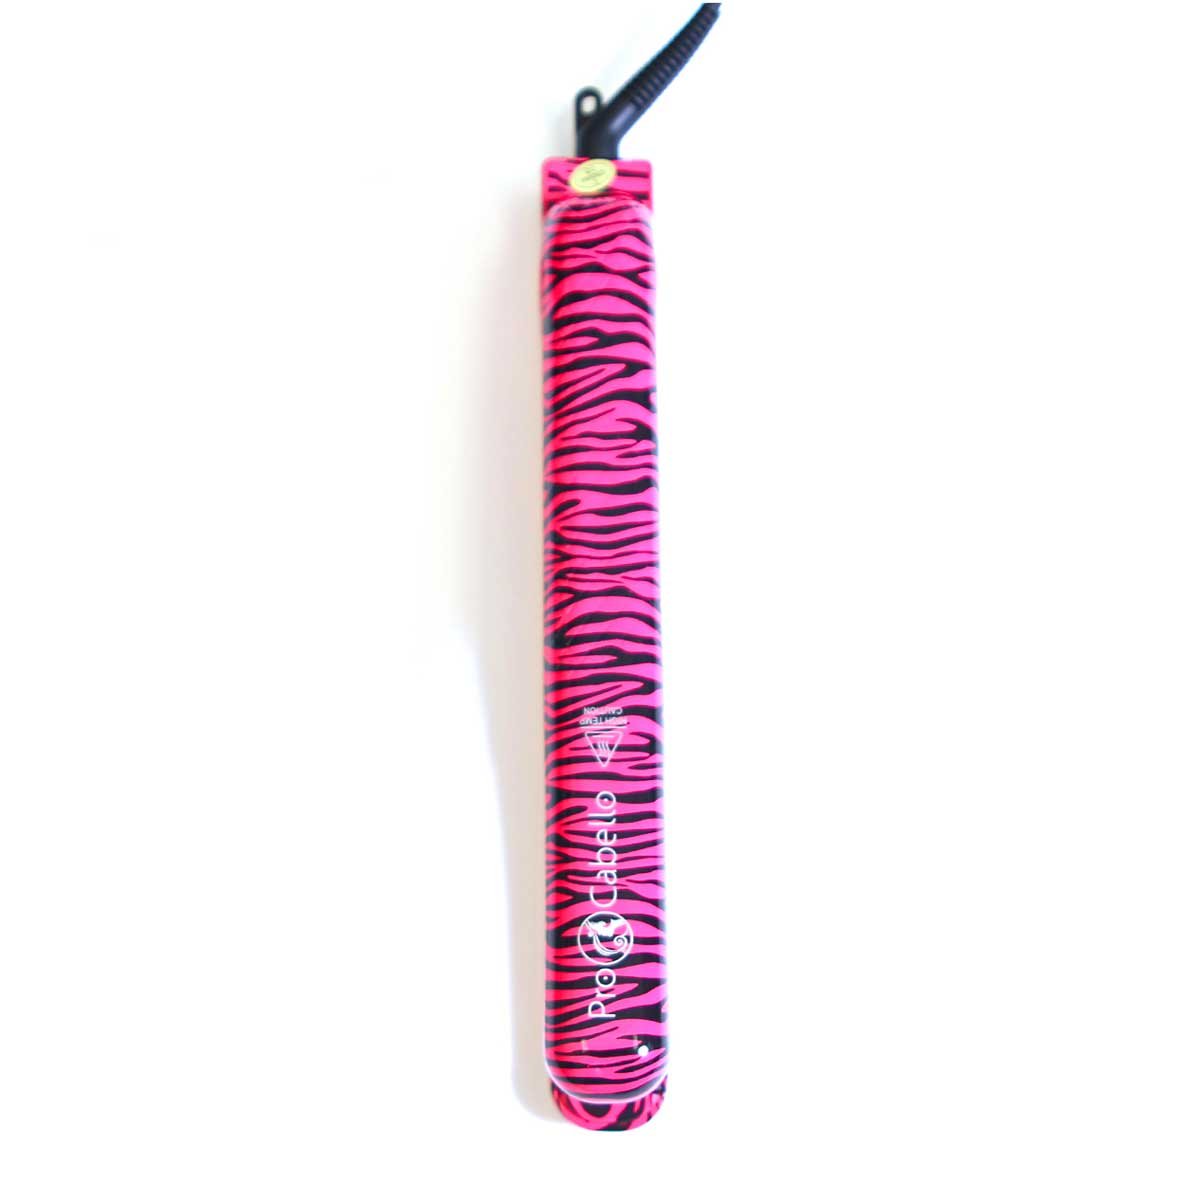 Plancha Alaciadora, Classic Pink Zebra